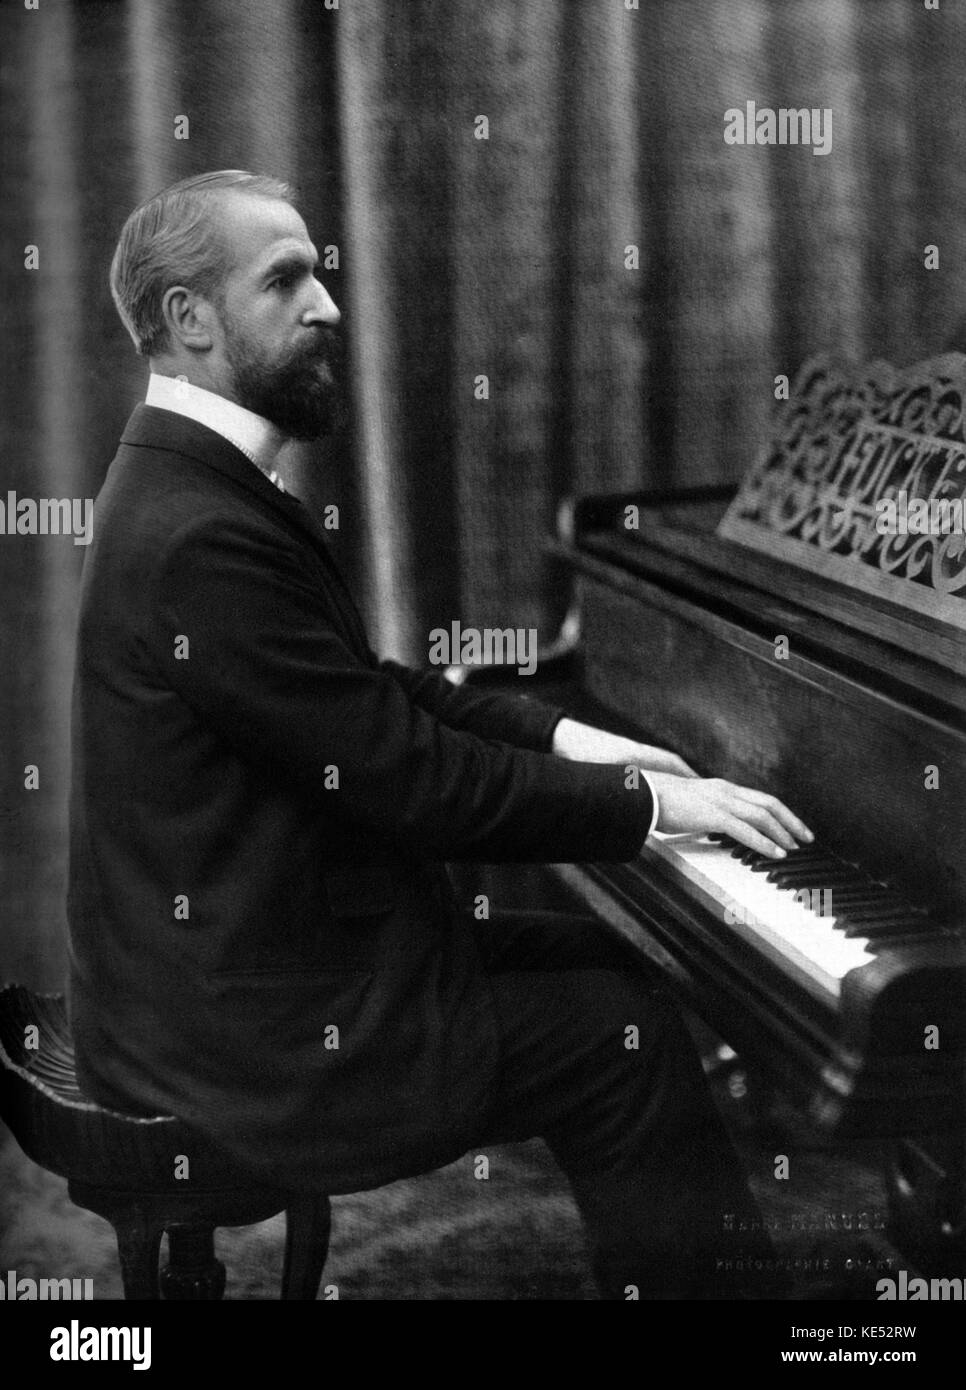 Alexandre Georges am Klavier. Komponist von miarka. Auf der Grundlage von Gedicht von Jean Richepin. Theatre National de l'Opera-Comique November 1905 uraufgeführt wurde. Stockfoto